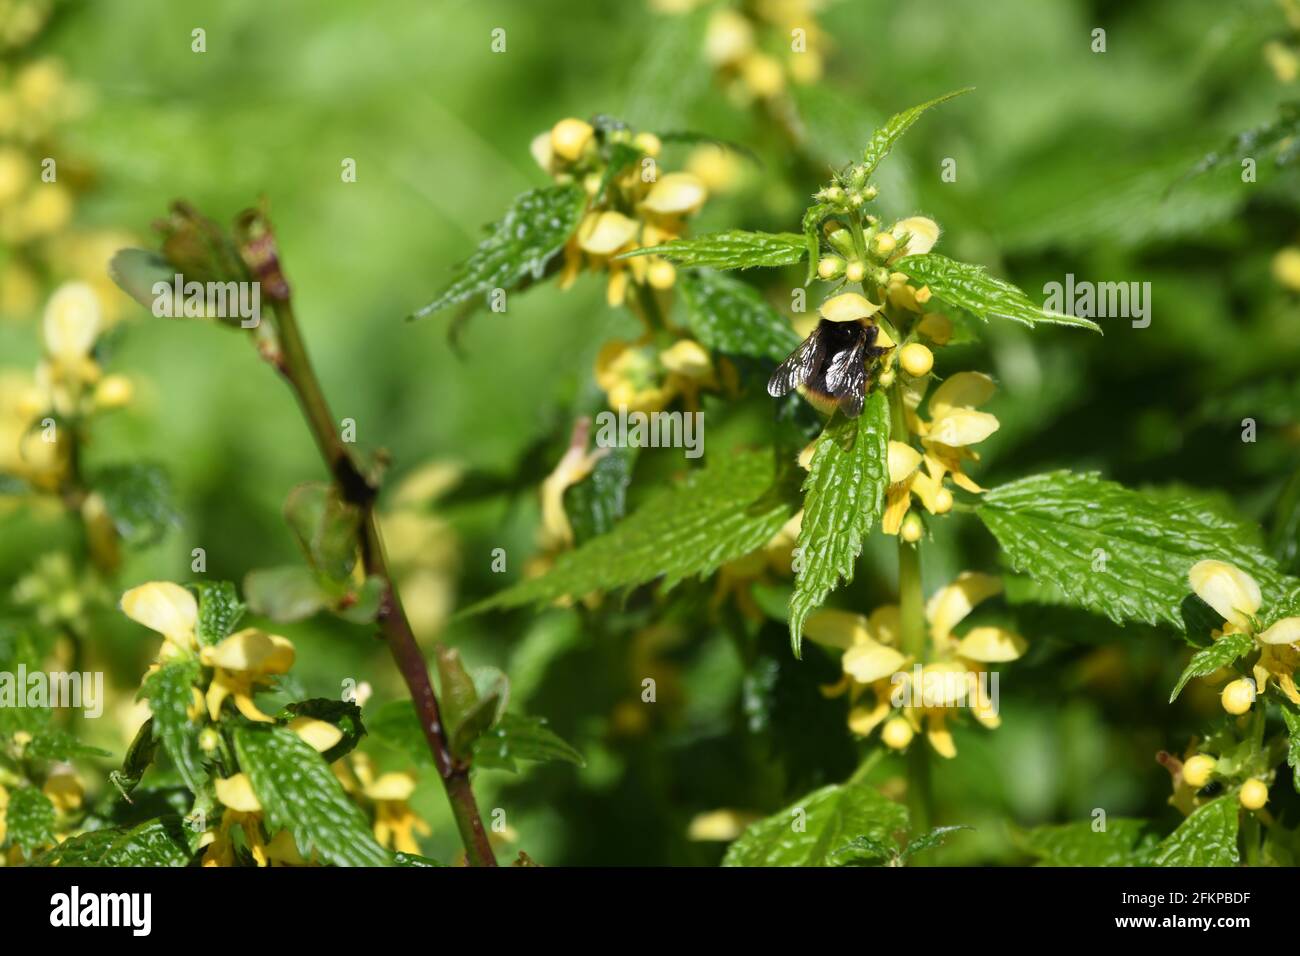 En Eurasien weit verbreitete Heilpflanze und Bienenweide Latium galeobdolon - gelbe oder Goldtaubnessel als Nahrungsspender für eine Fliege Foto de stock